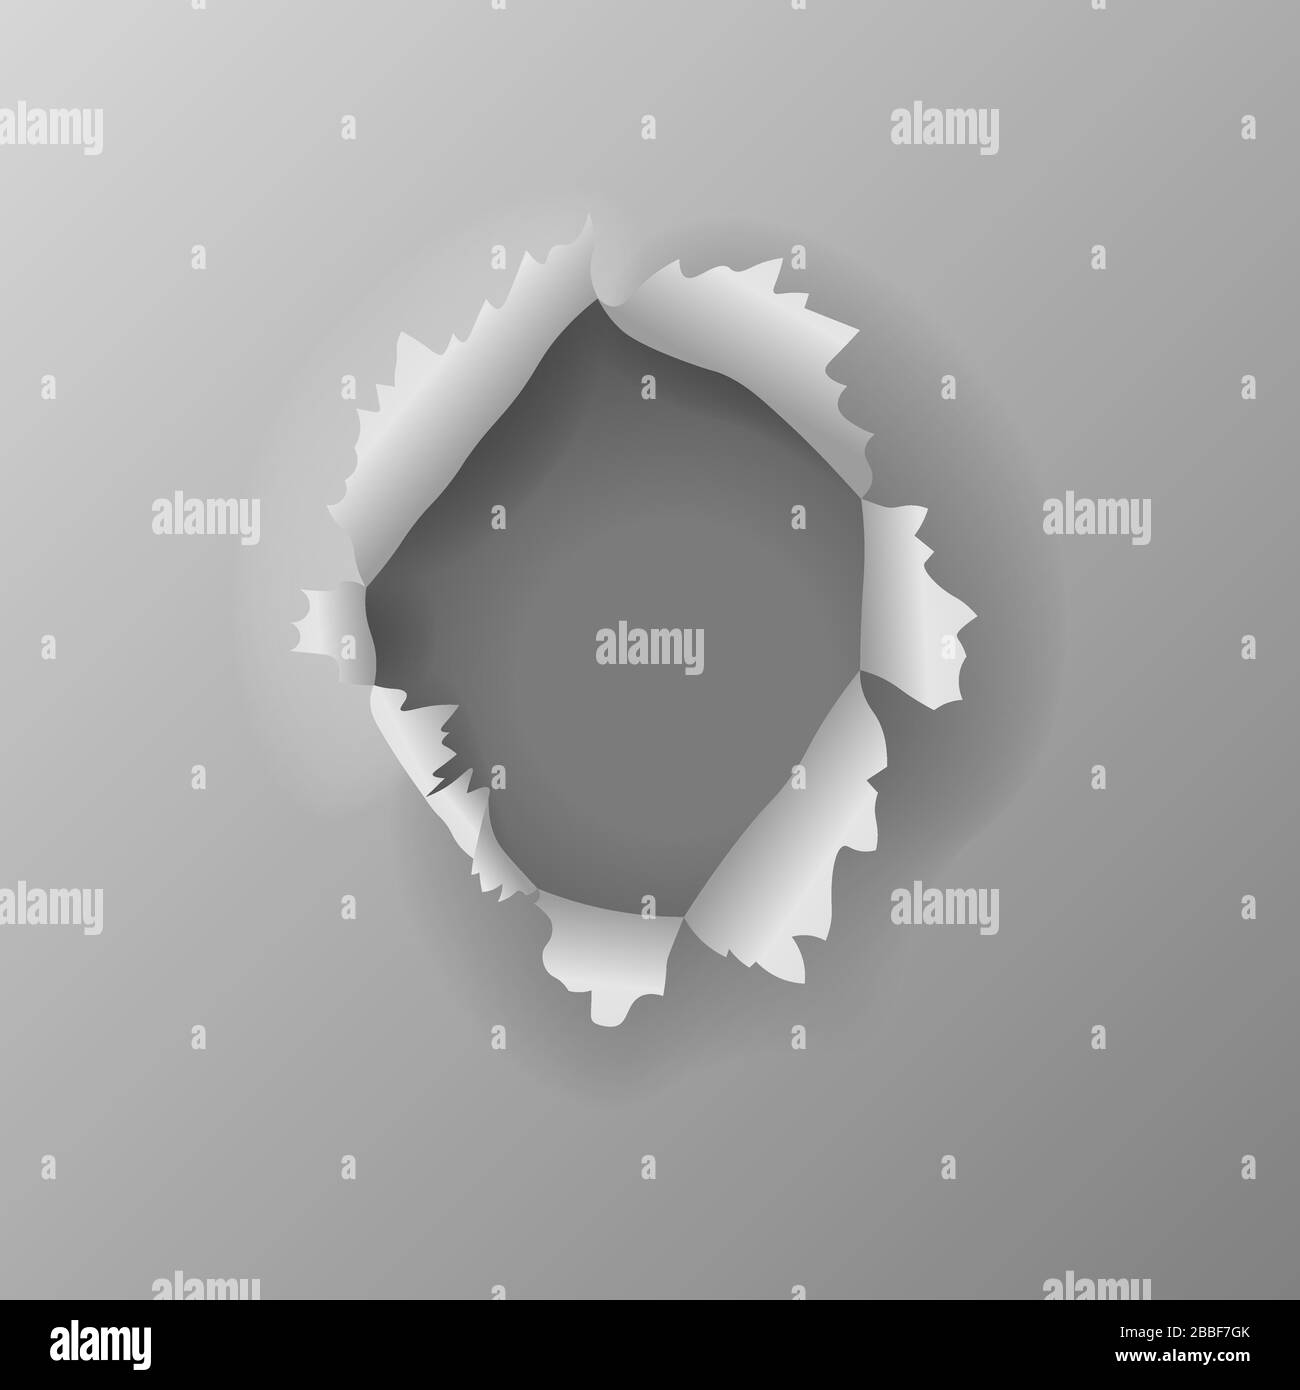 Circle shape hole punch on white background Stock Photo - Alamy